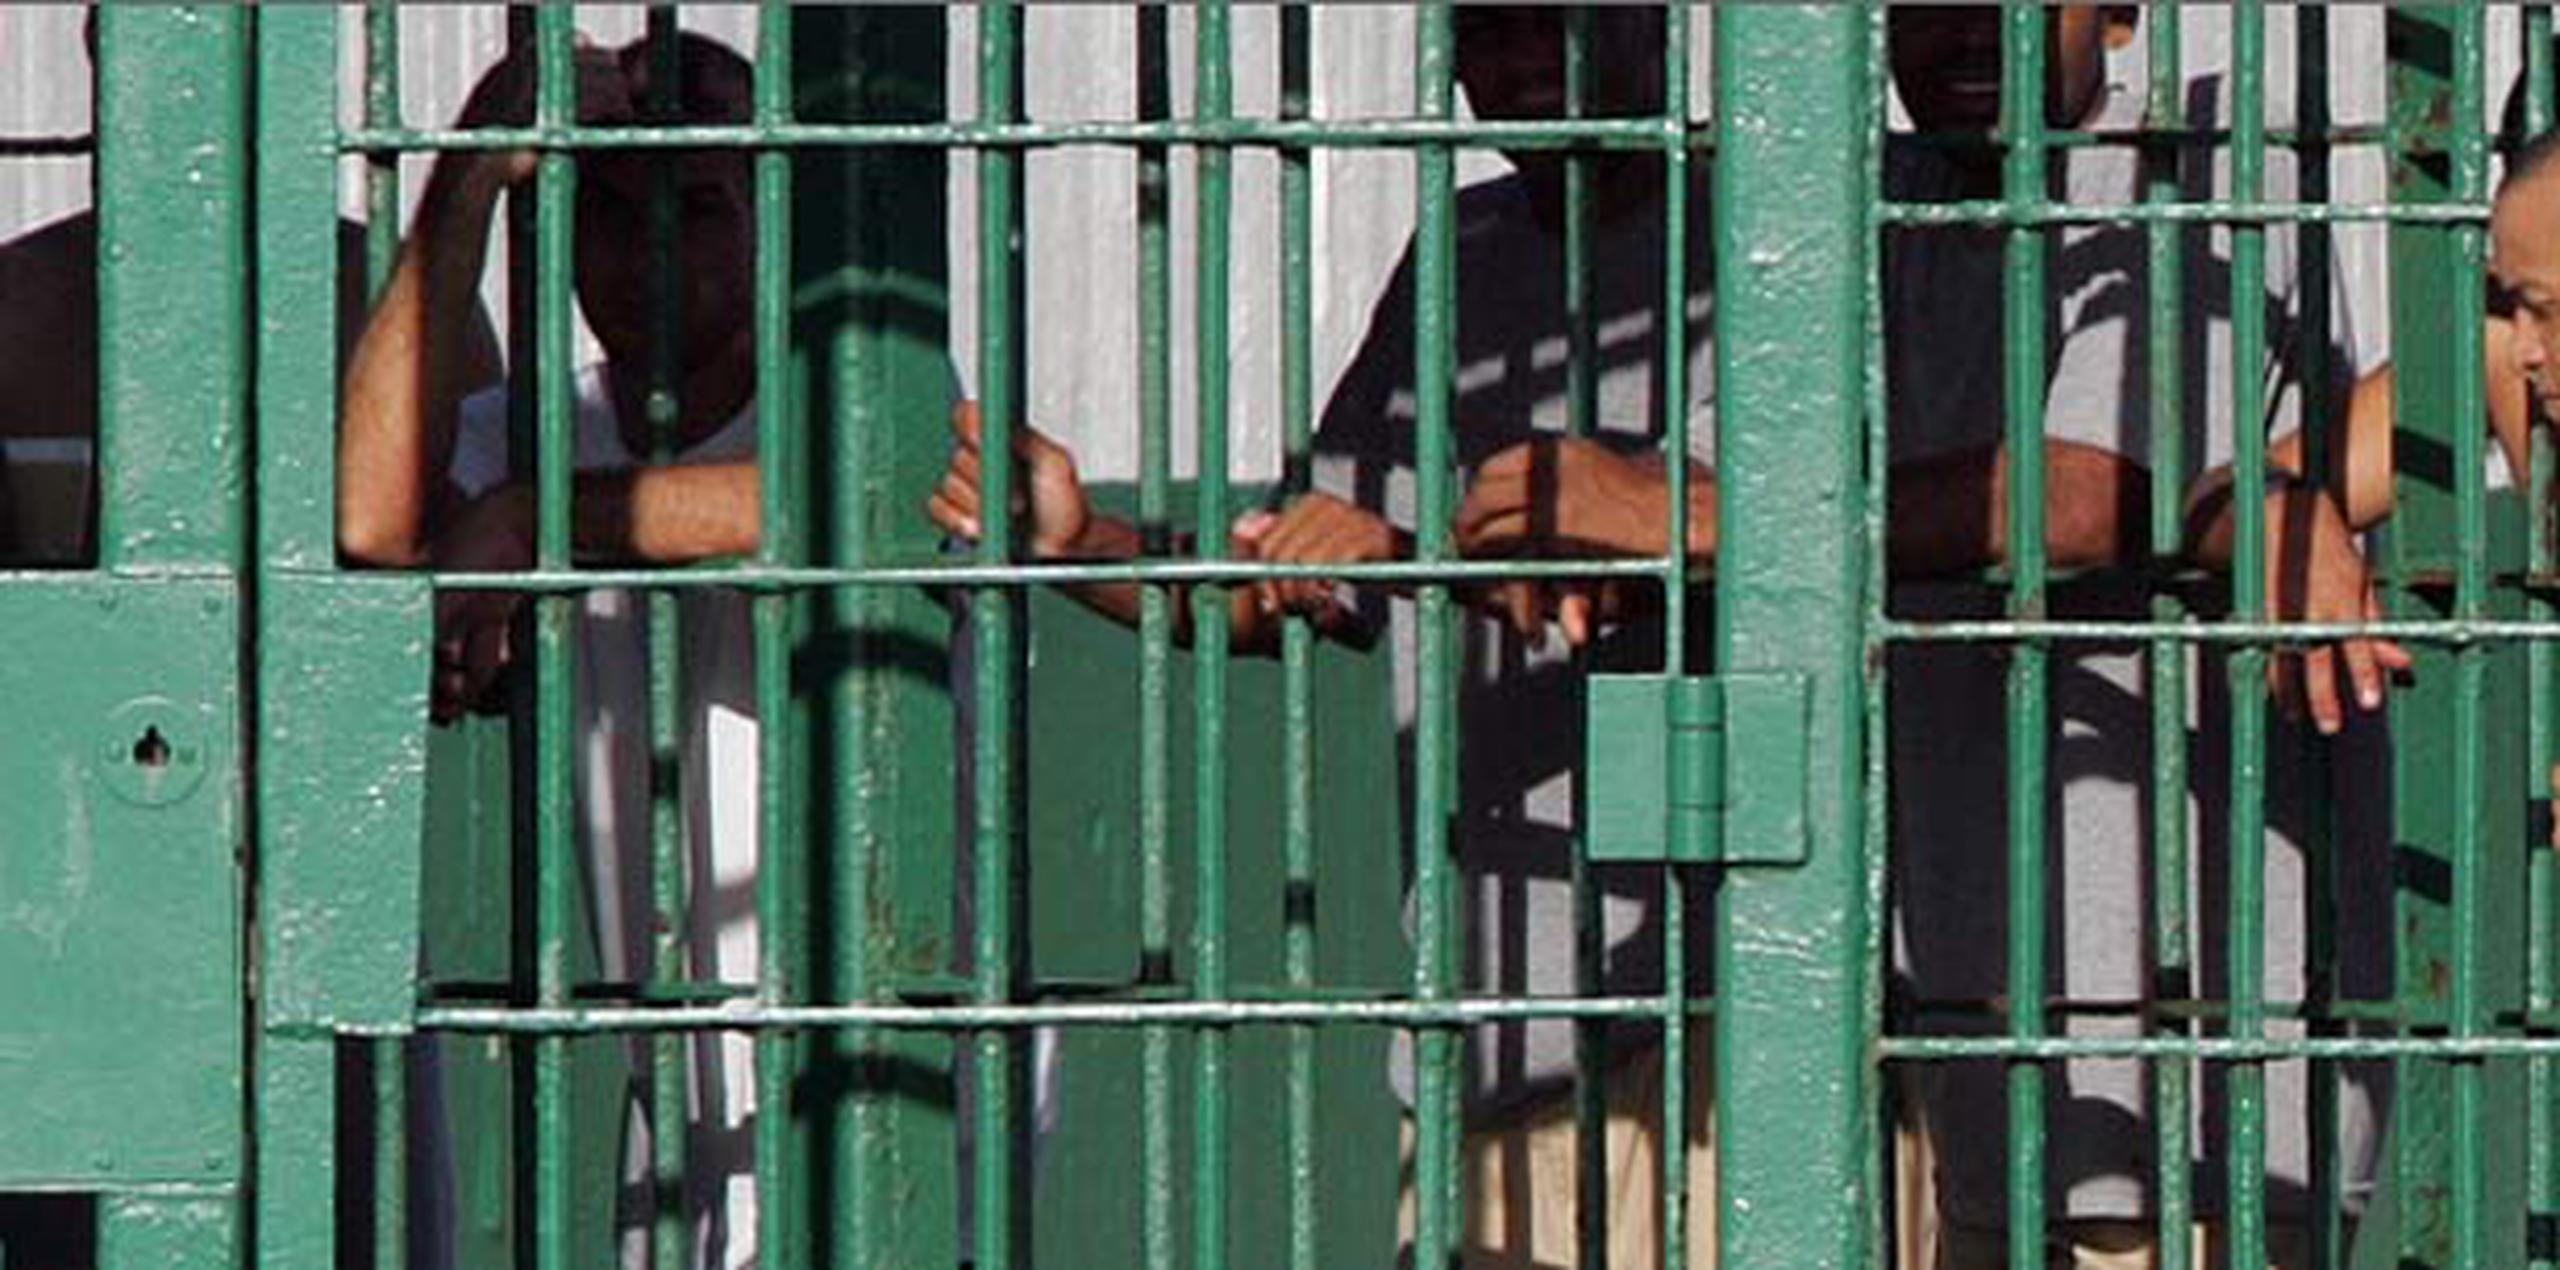 El caso Morales Feliciano comenzó como un pleito contra el gobierno ante el hacinamiento en las cárceles y la constante violación de derechos civiles.